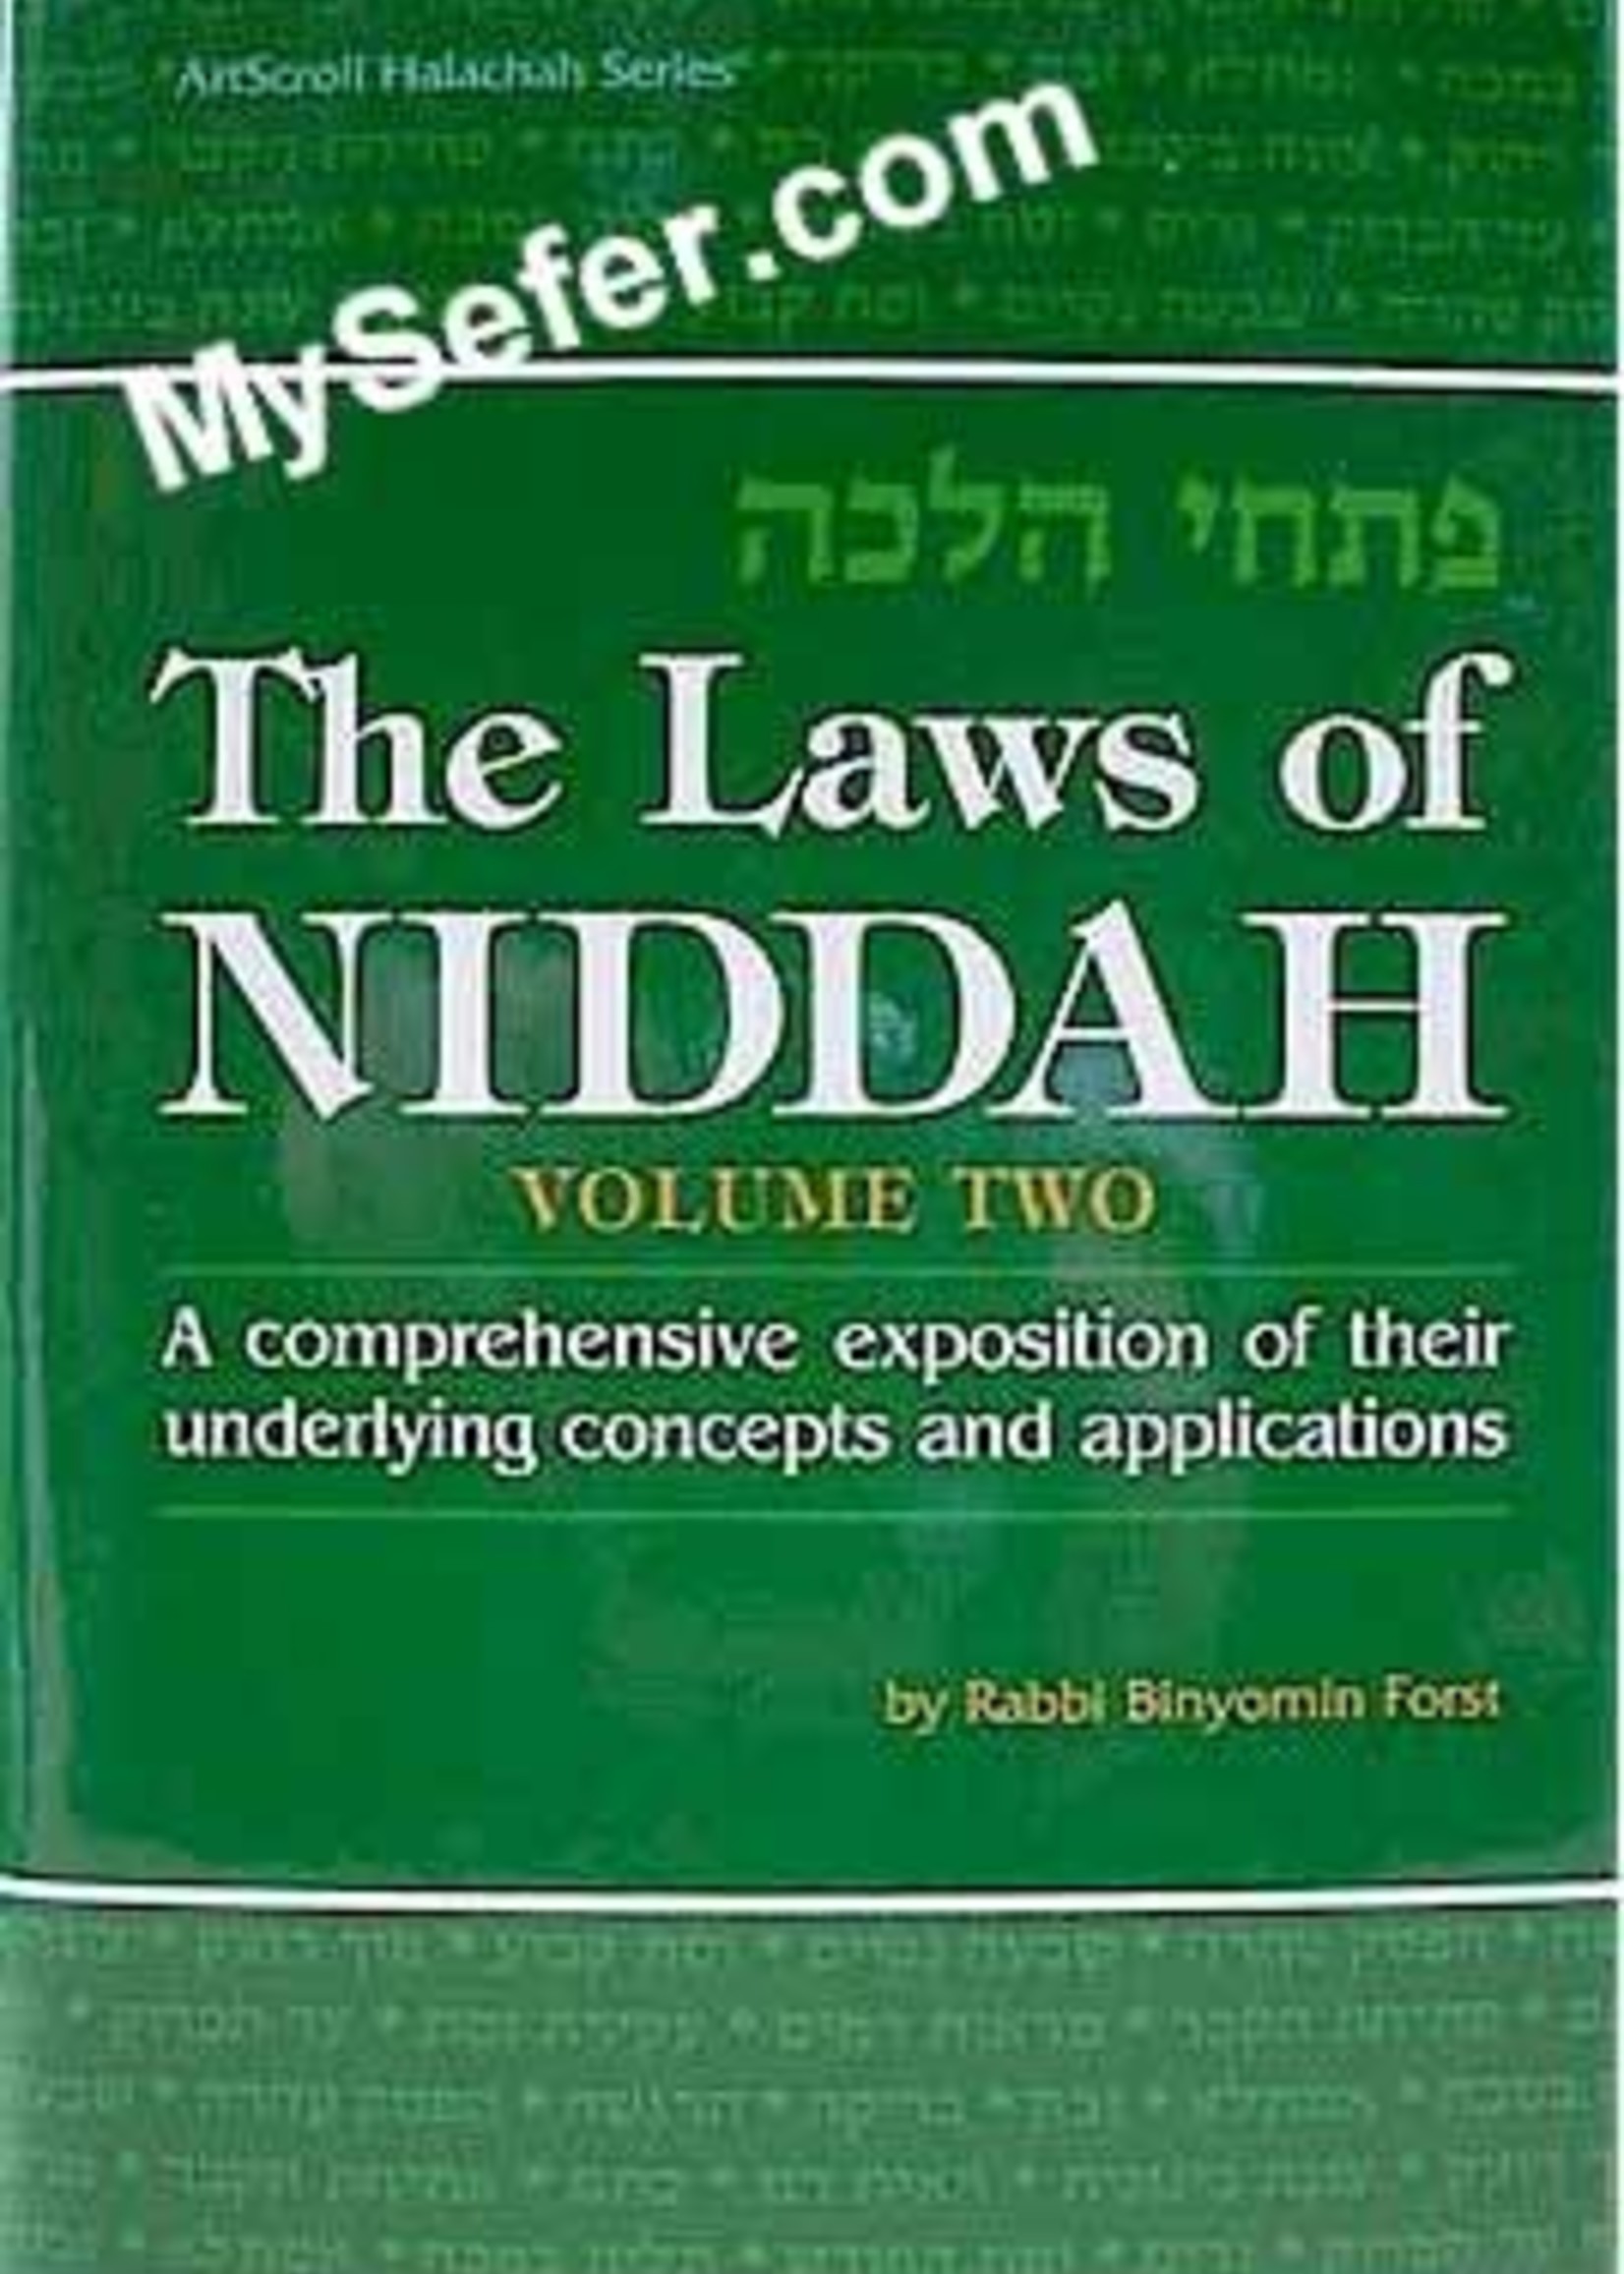 The Laws Of Niddah - Volume 2 (Rabbi Forst)